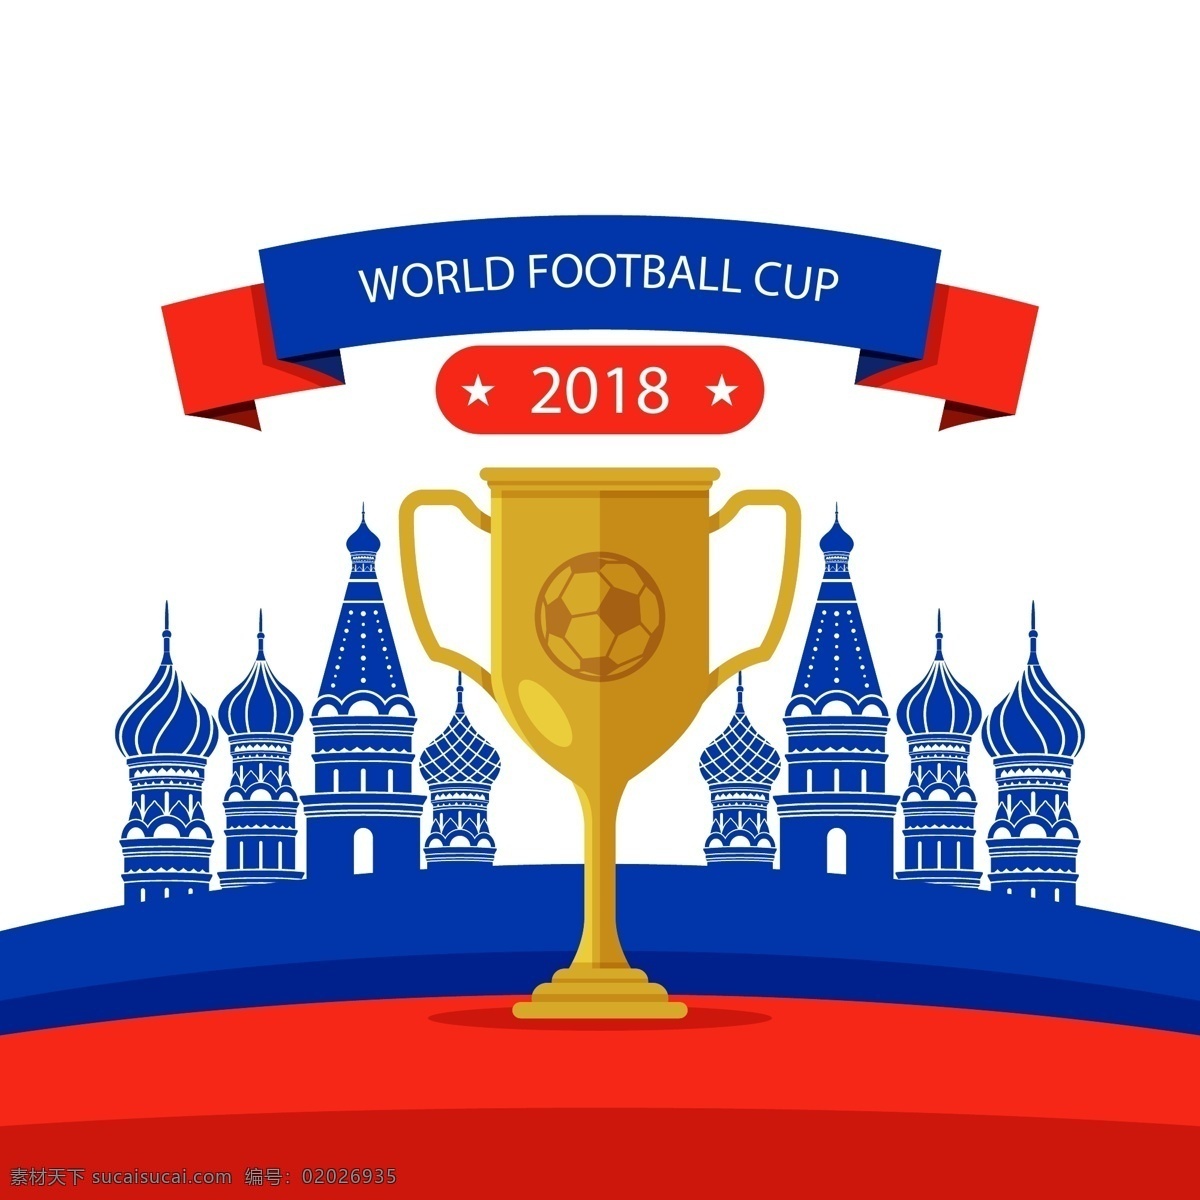 2018 世界杯 足球赛 建筑 元素 建筑元素 俄罗斯 卡通 十堰体育 原创素材 卡通设计